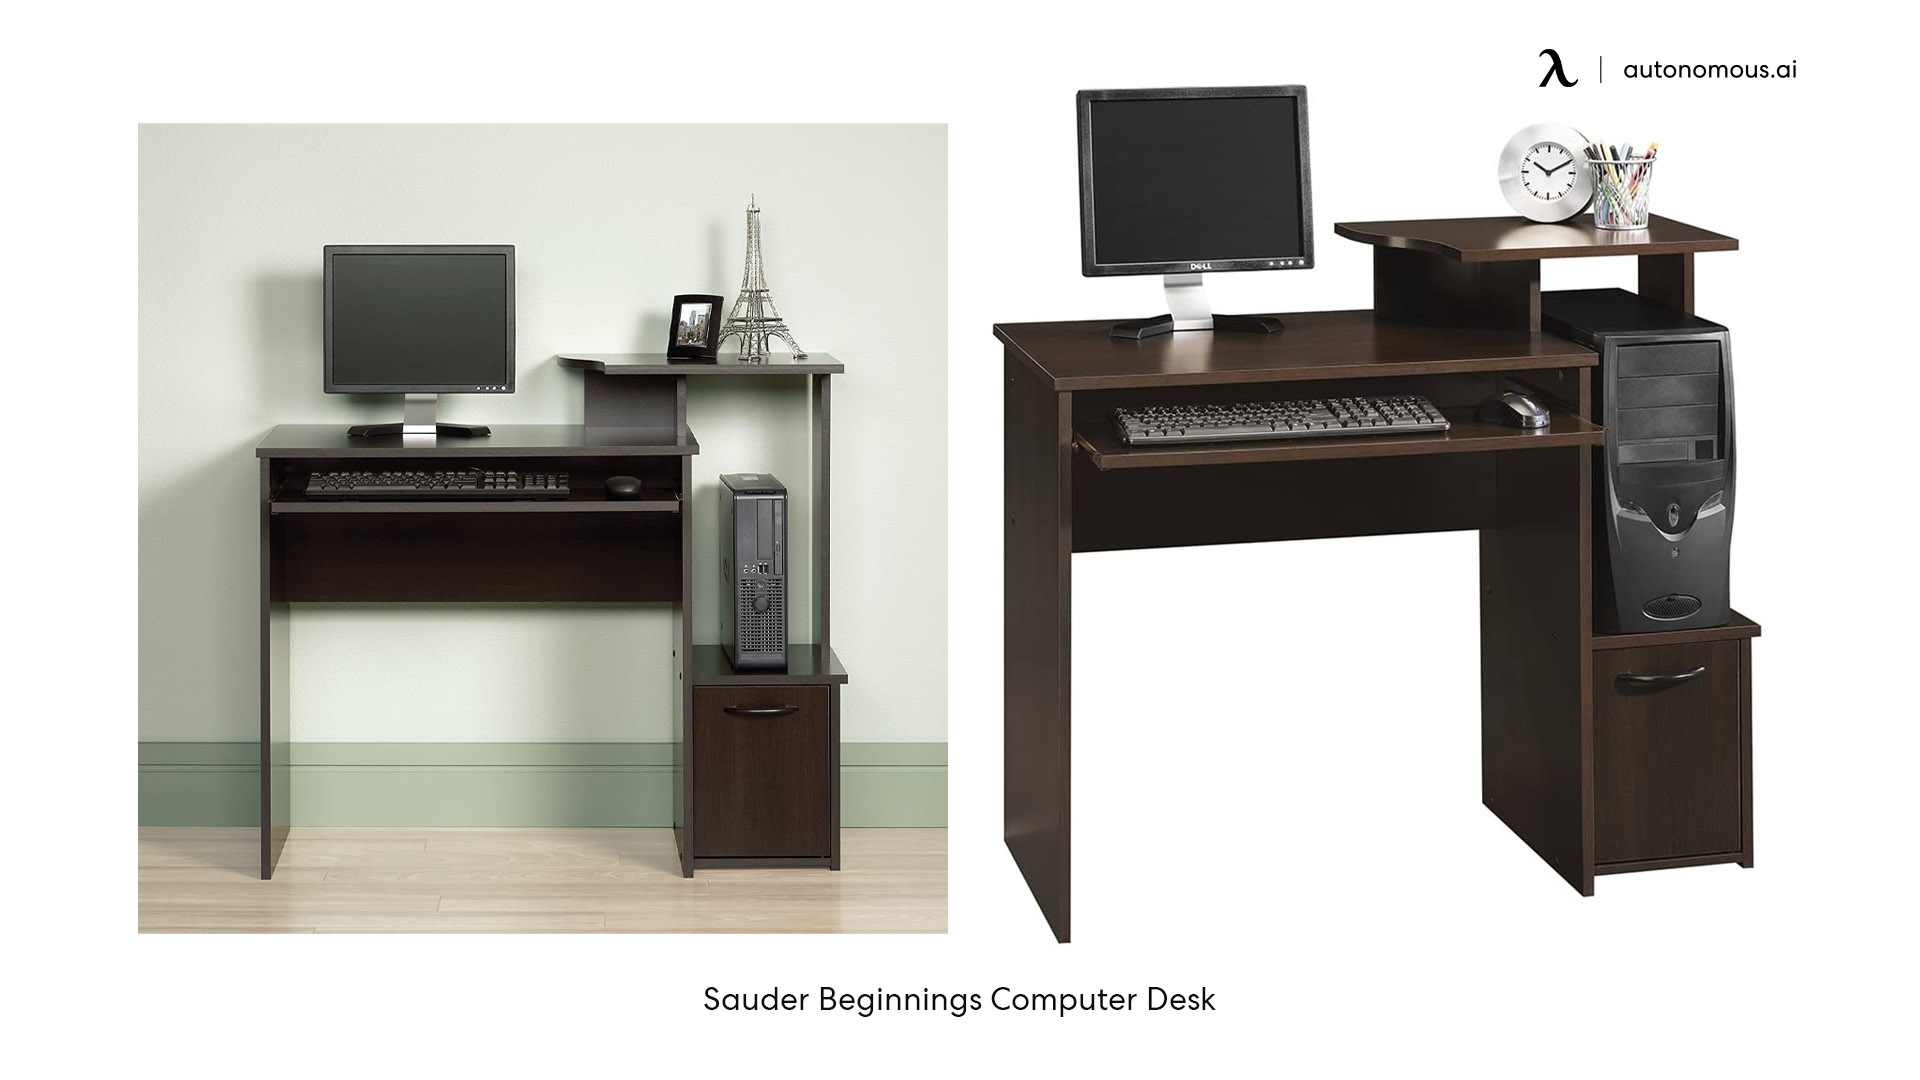 Sauder Beginnings small home office desk